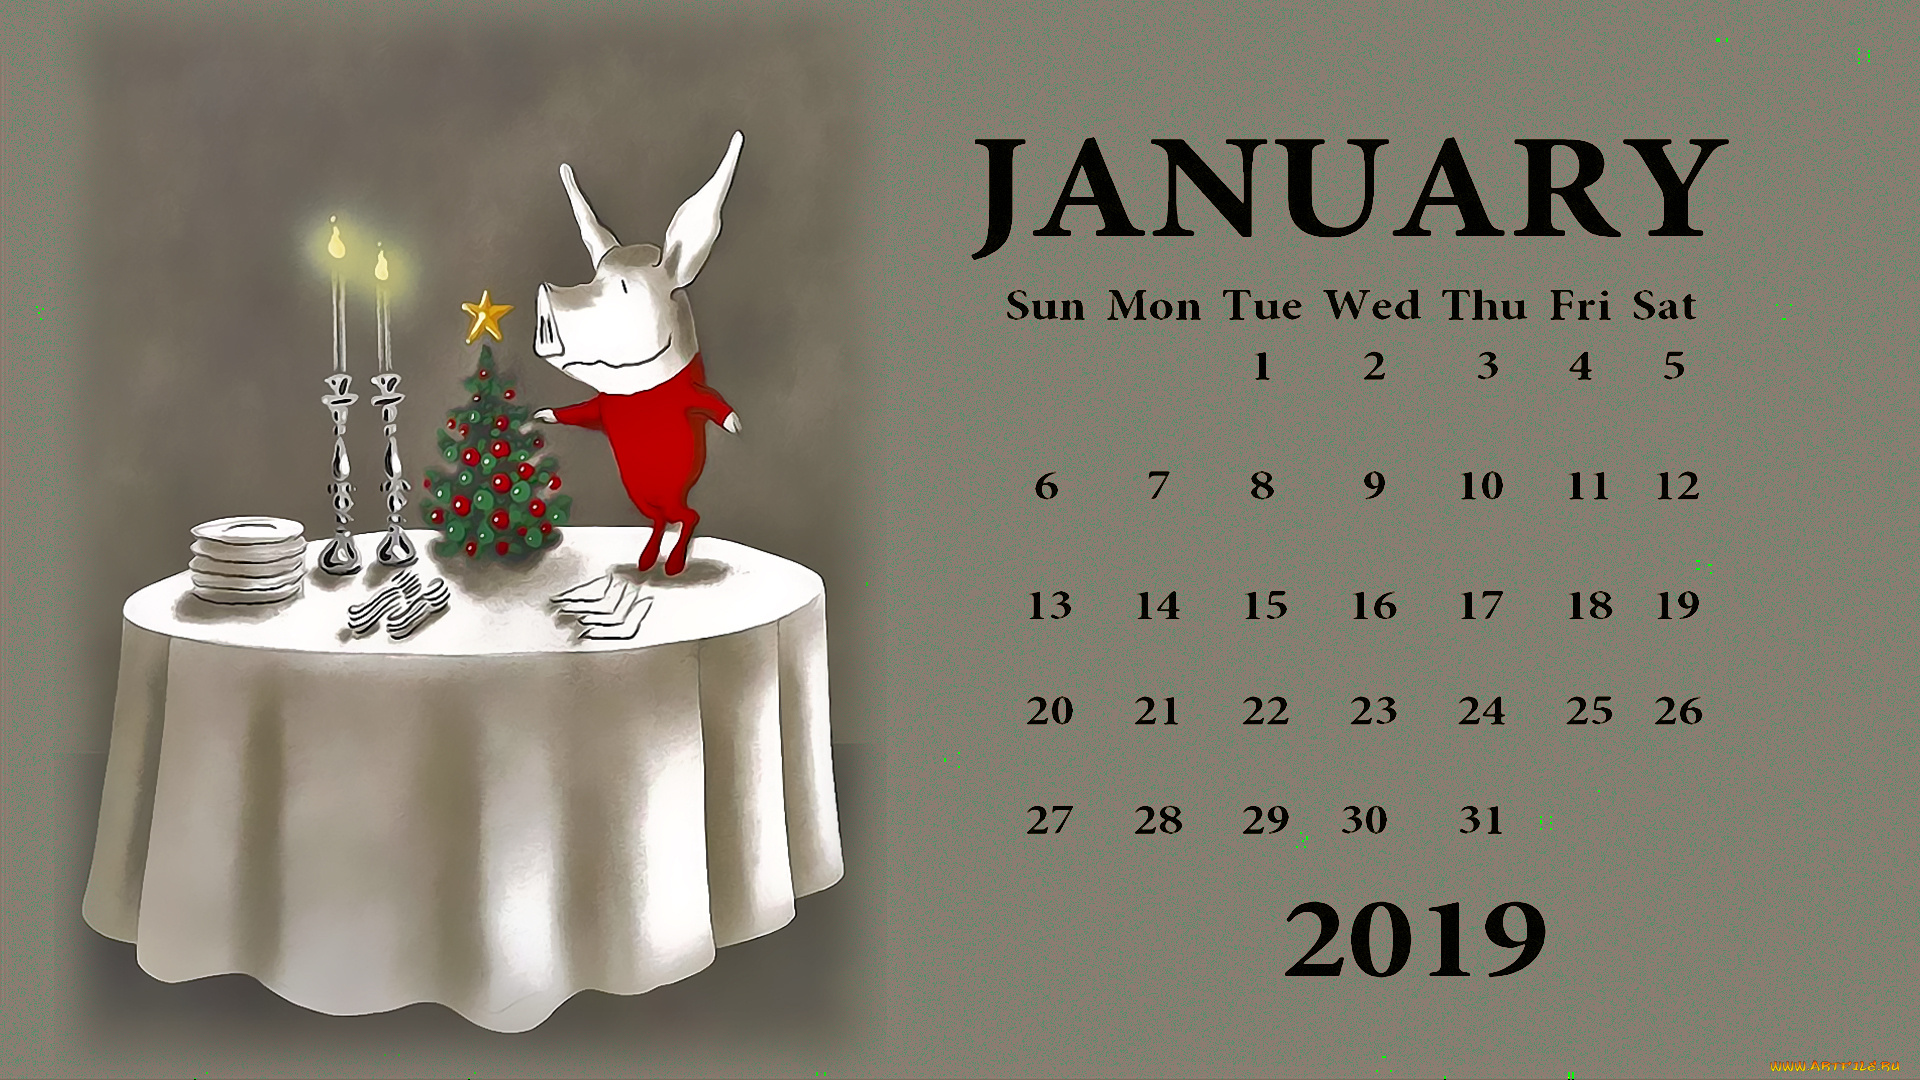 календари, праздники, , салюты, свинья, свеча, поросенок, стол, посуда, елка